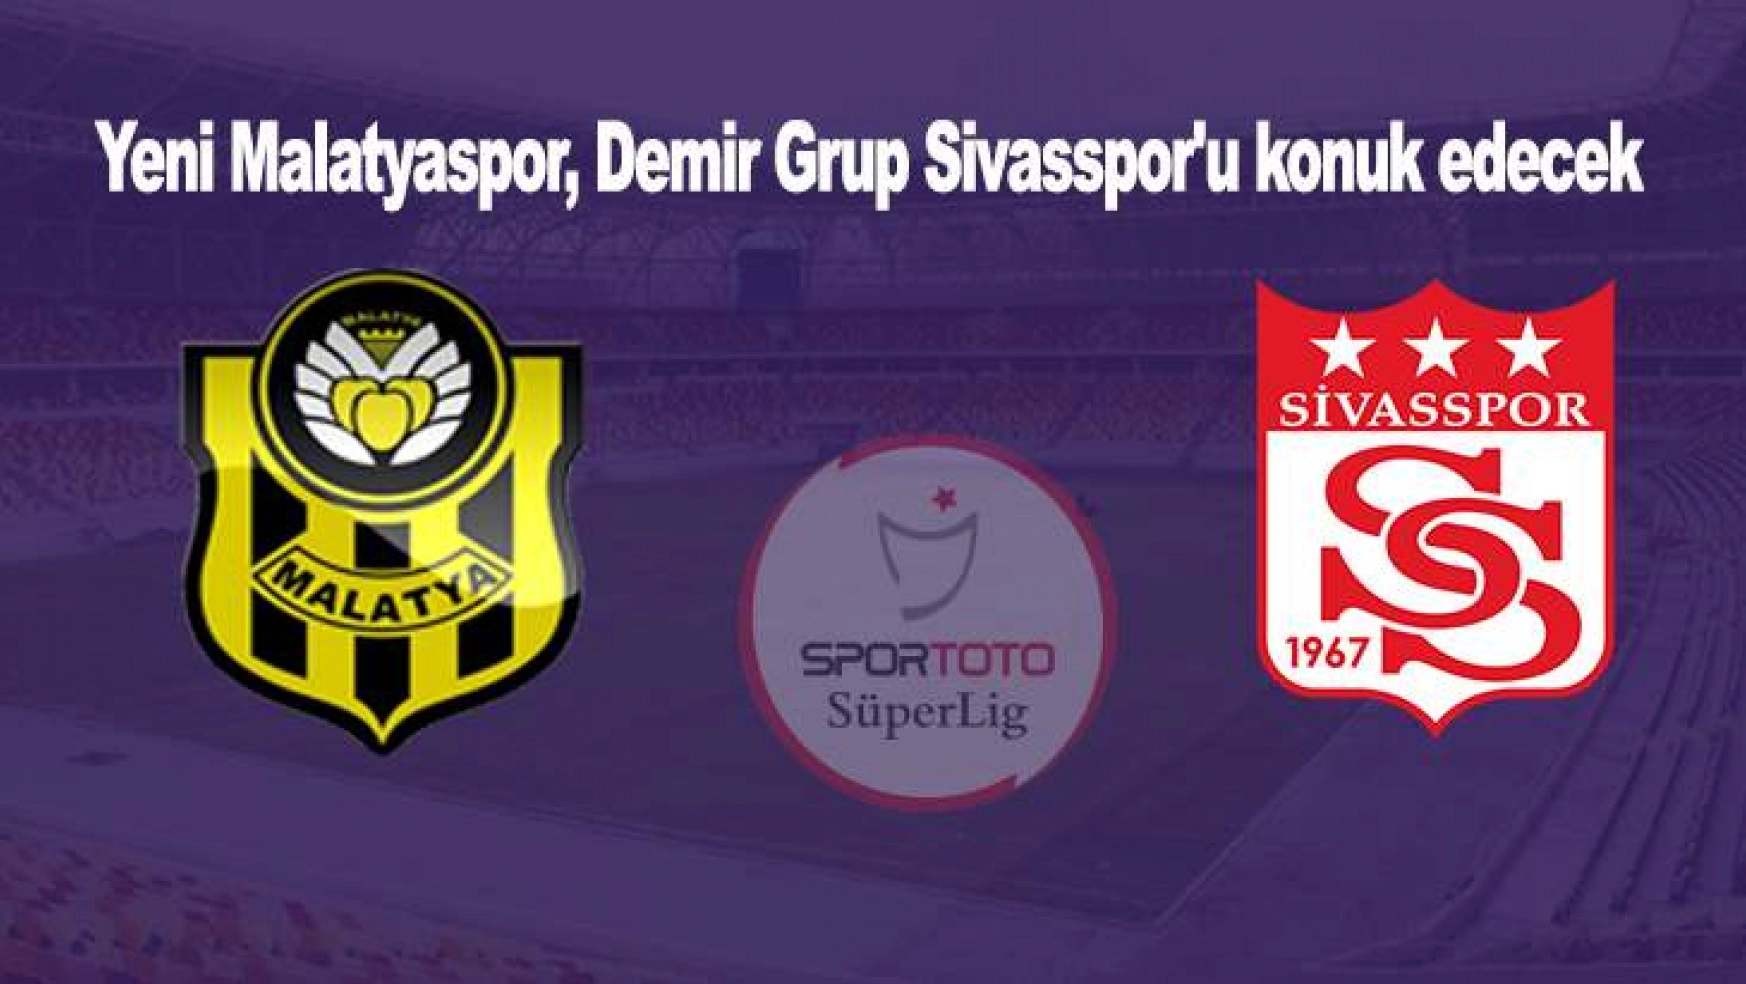 Yeni Malatyaspor, Demir Grup Sivasspor'u konuk edecek